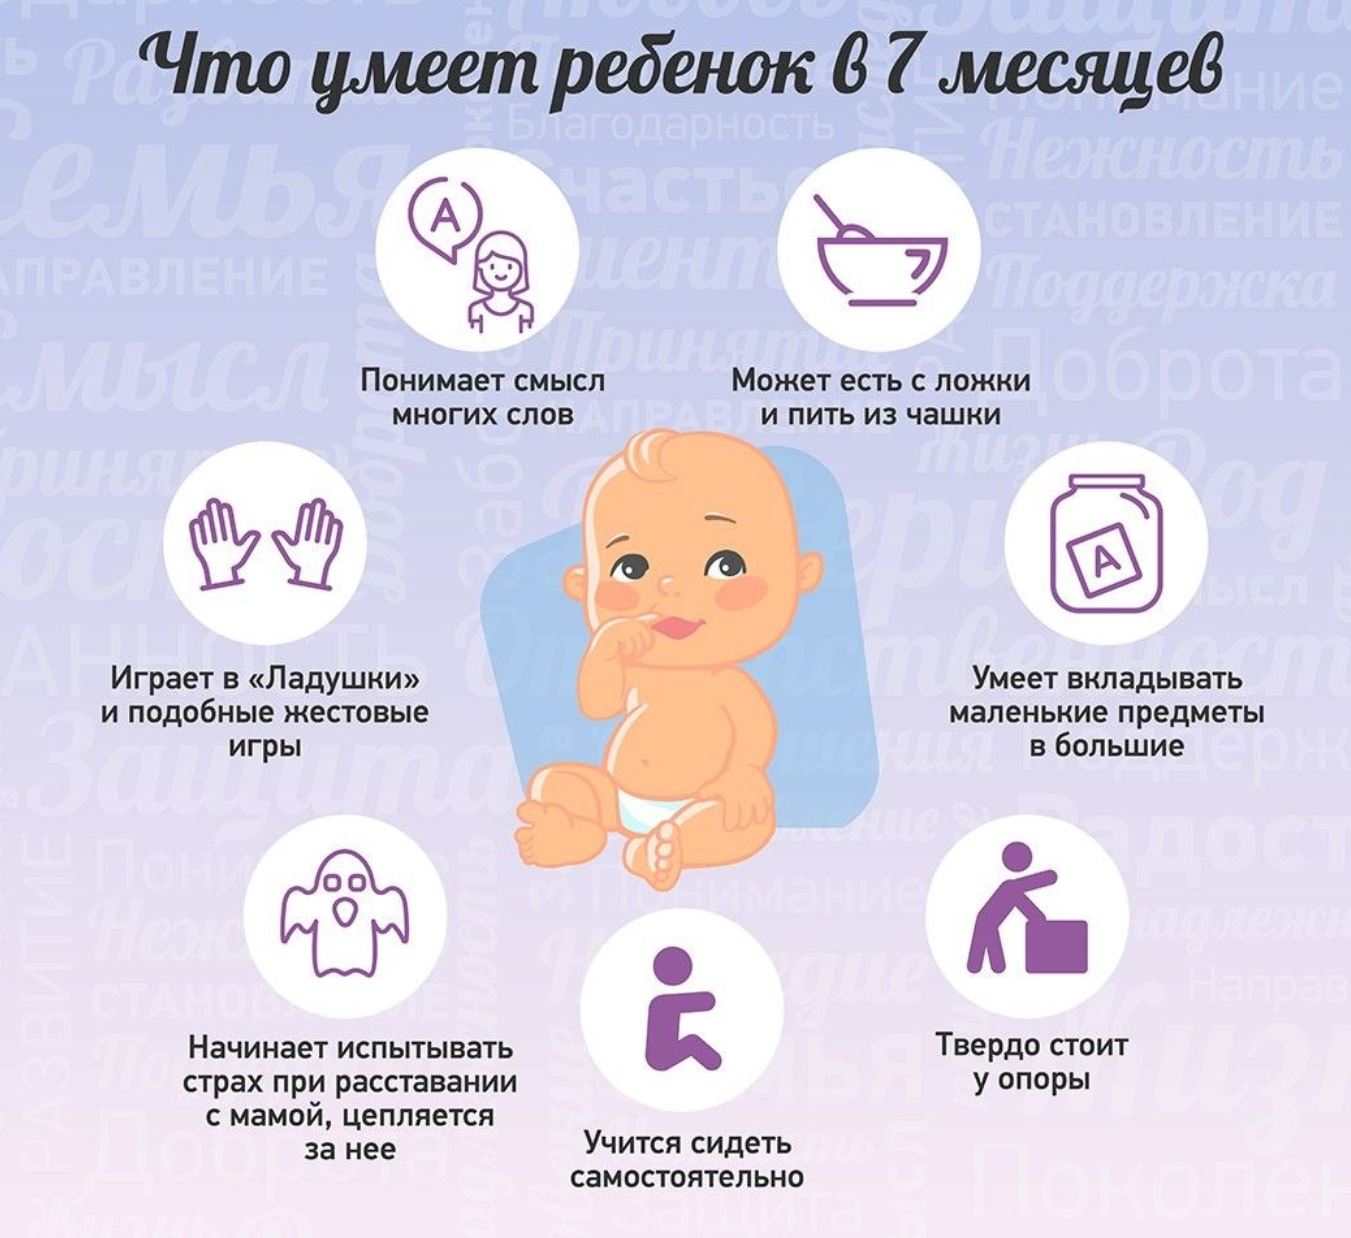 Ключевые особенности и нормы развития ребенка в 9 месяцев